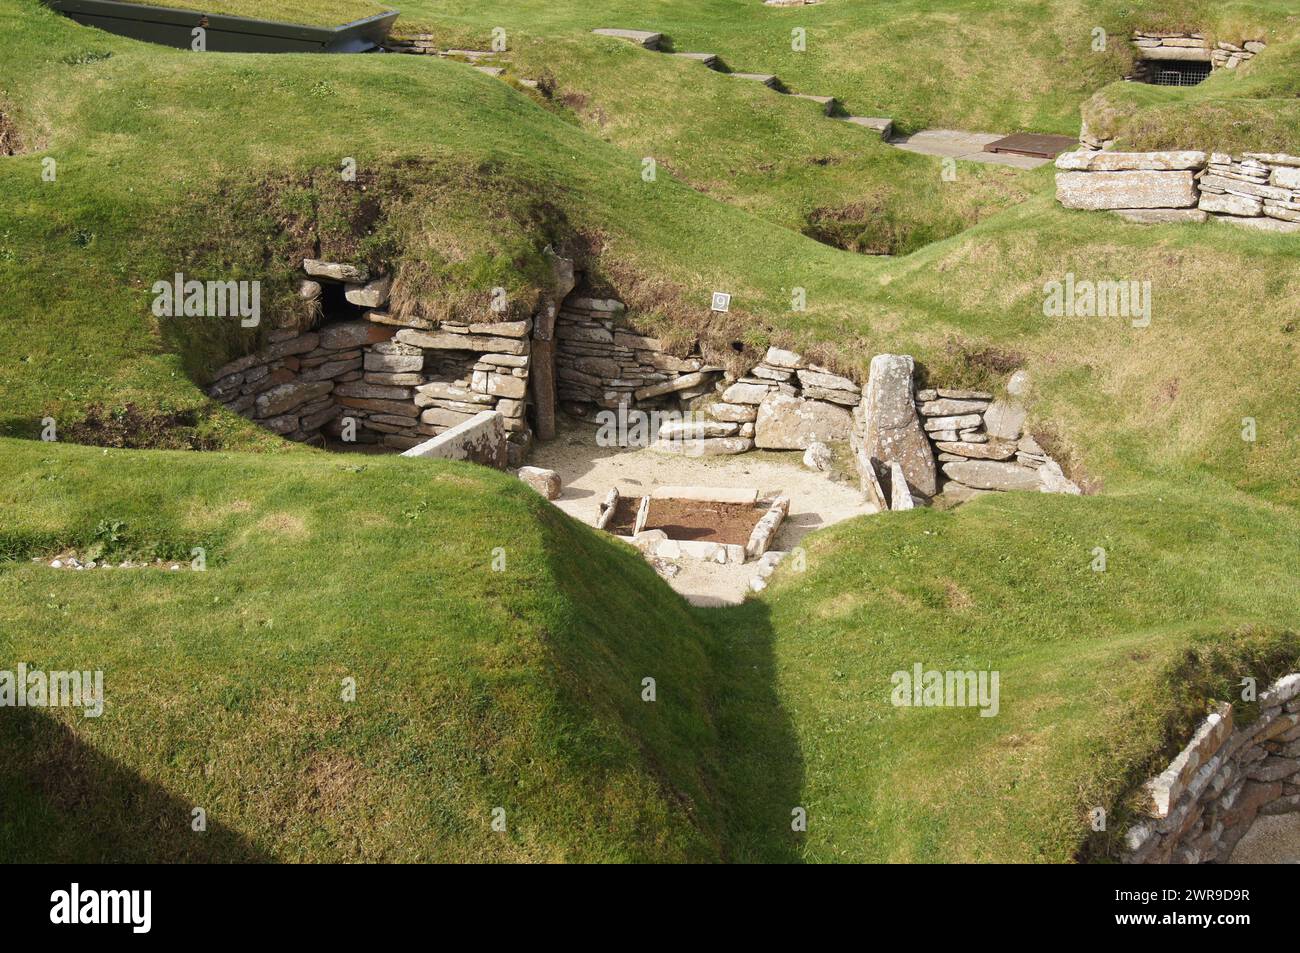 Vieille de 5000 ans, Skara Brae, colonie néolithique construite en pierre, située dans la baie de Skaill, Orcades, Écosse Banque D'Images